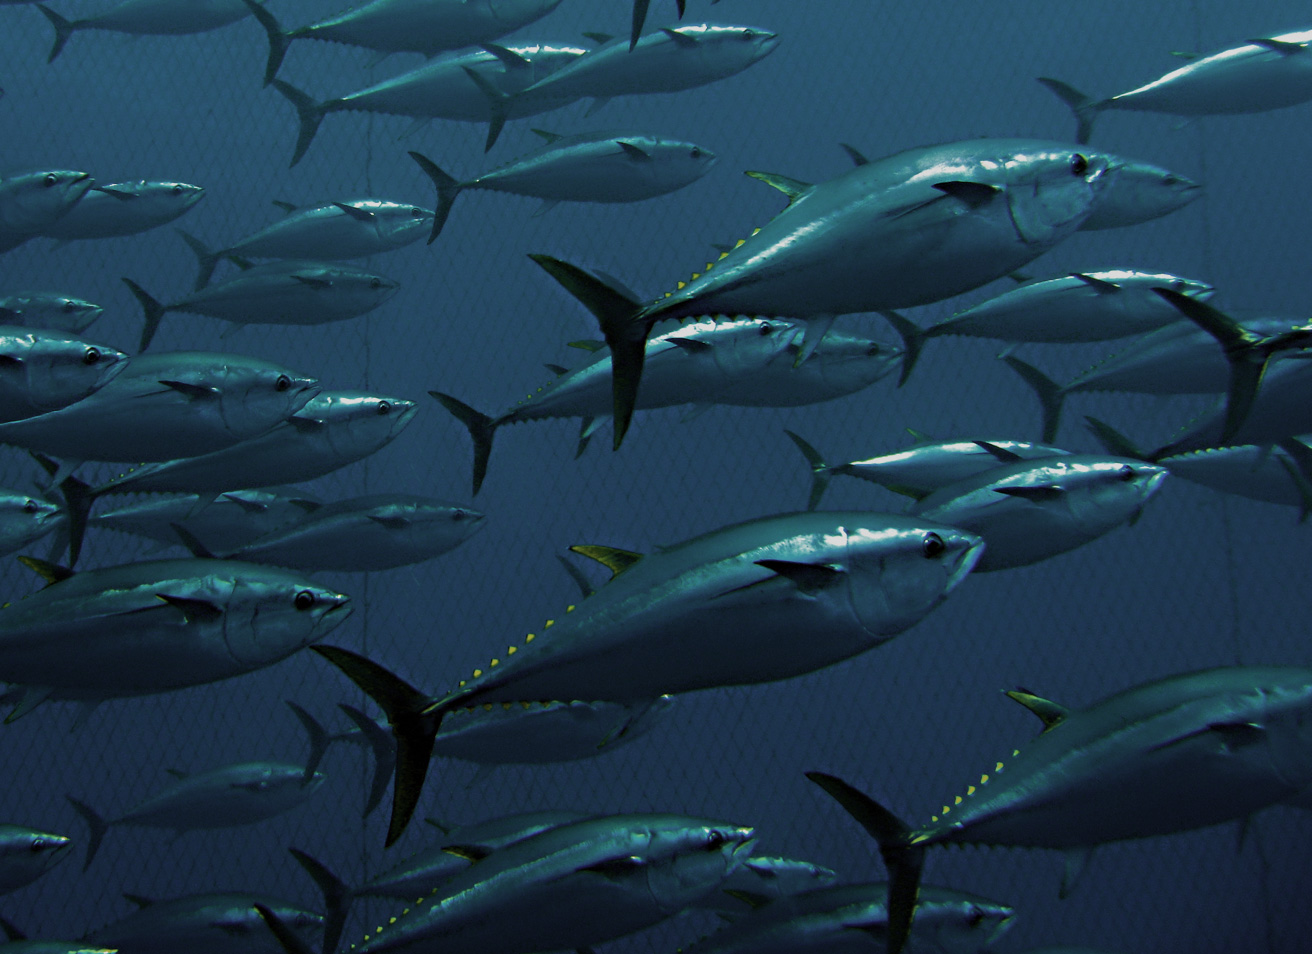 Tuna Attack T-Shirt Bluefin Tuna Yellowfin Tuna Fishing Graphic